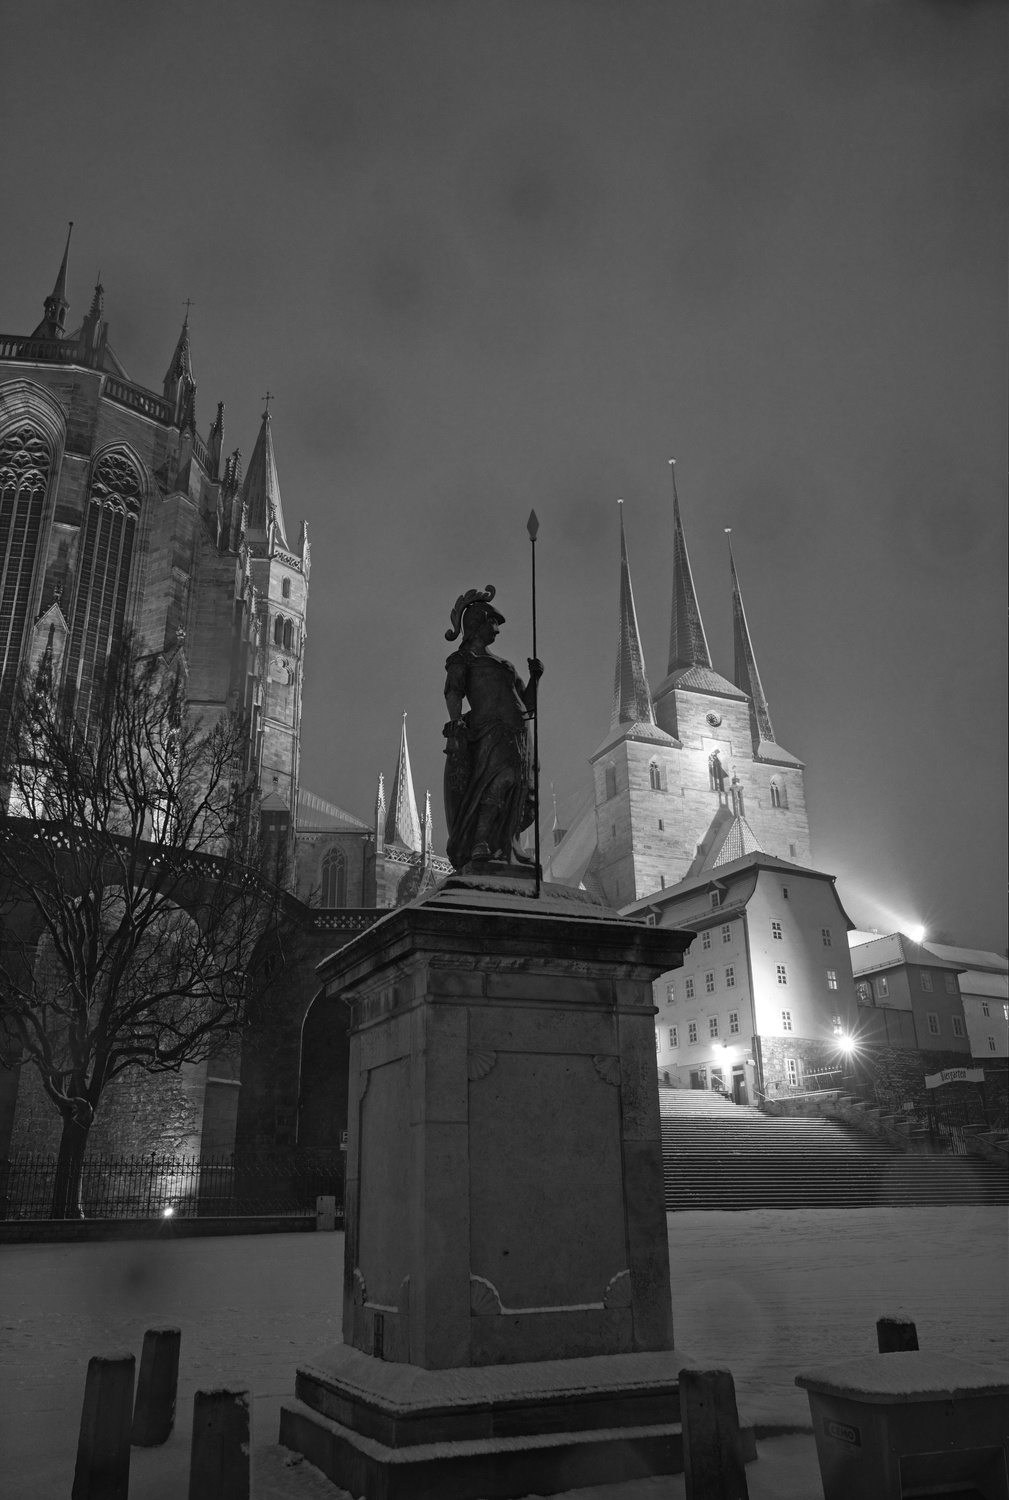 In Schwarz-WeiÃŸ tritt die deutlich dunklere Statue durch den starken Kontrast in den Vordergrund, obwohl der Dom und die Severikirche im Hintergrund besser ausgeleuchtet sind.